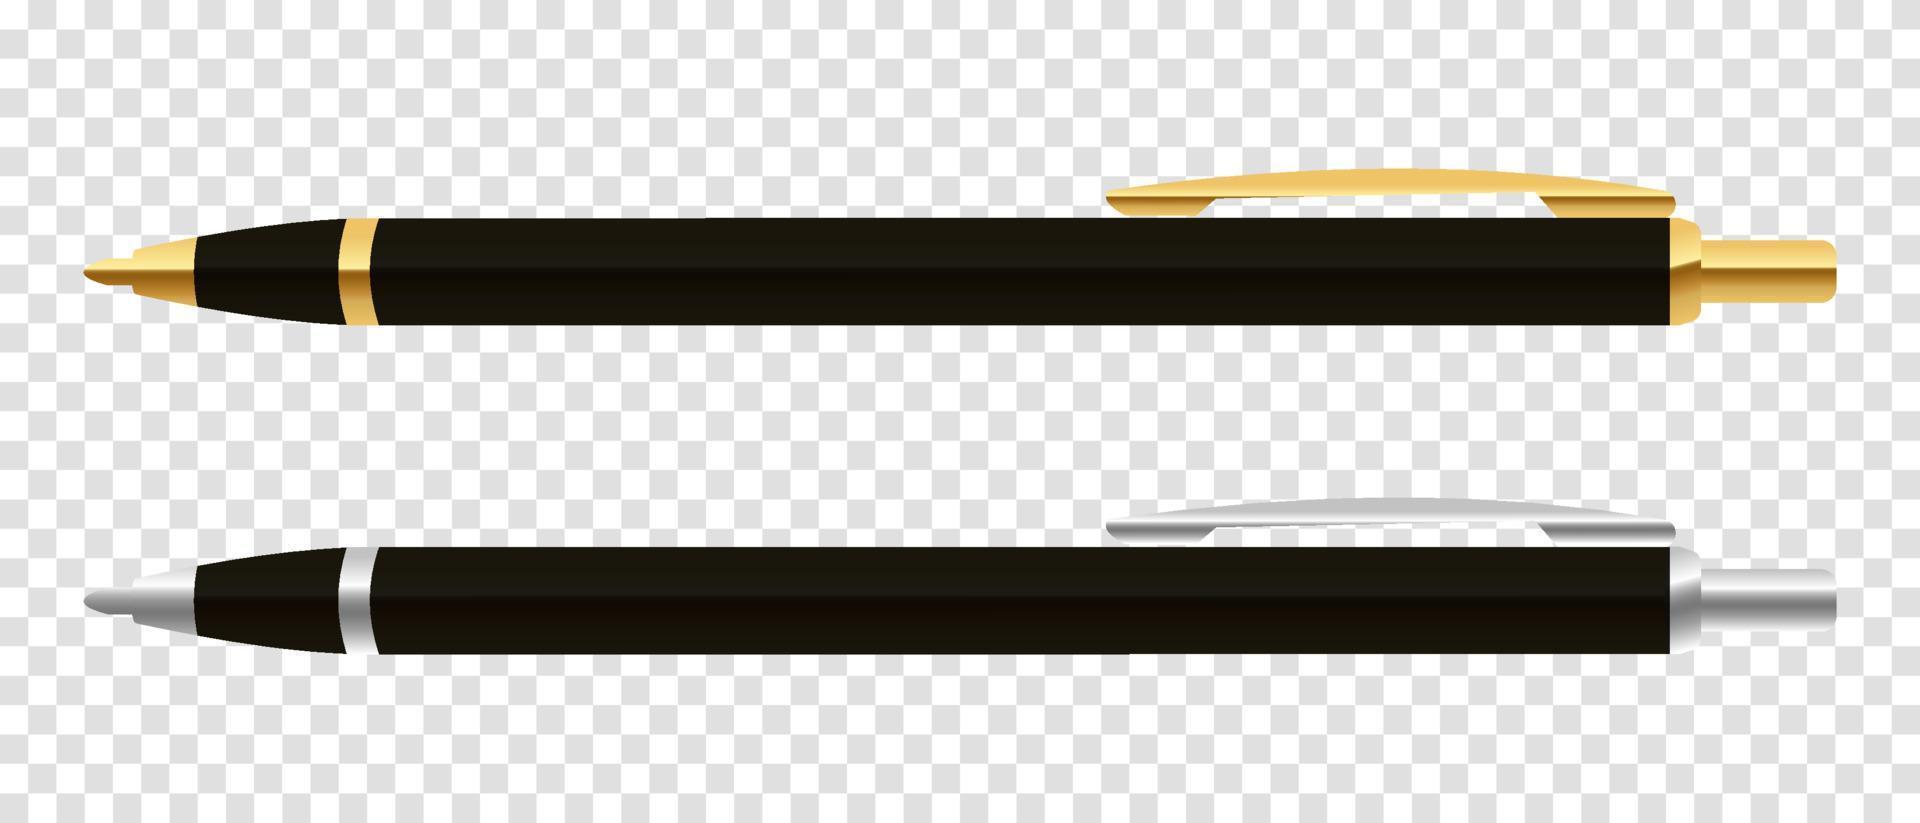 caneta esferográfica de vetor preto. caneta esferográfica clássica. ilustração vetorial